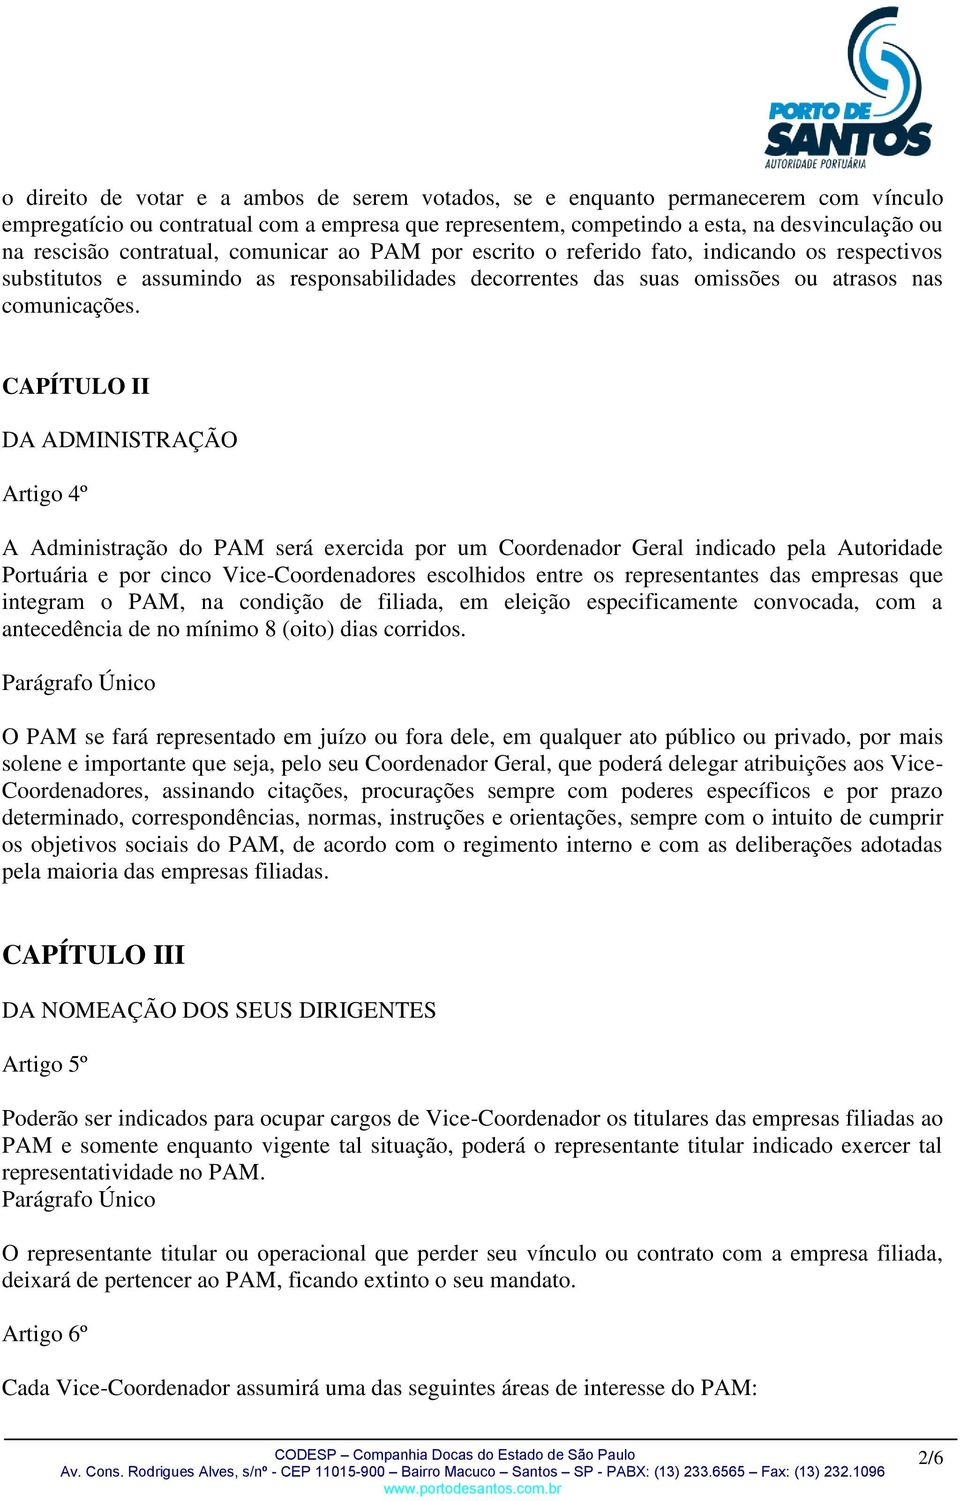 CAPÍTULO II DA ADMINISTRAÇÃO Artigo 4º A Administração do PAM será exercida por um Coordenador Geral indicado pela Autoridade Portuária e por cinco Vice-Coordenadores escolhidos entre os